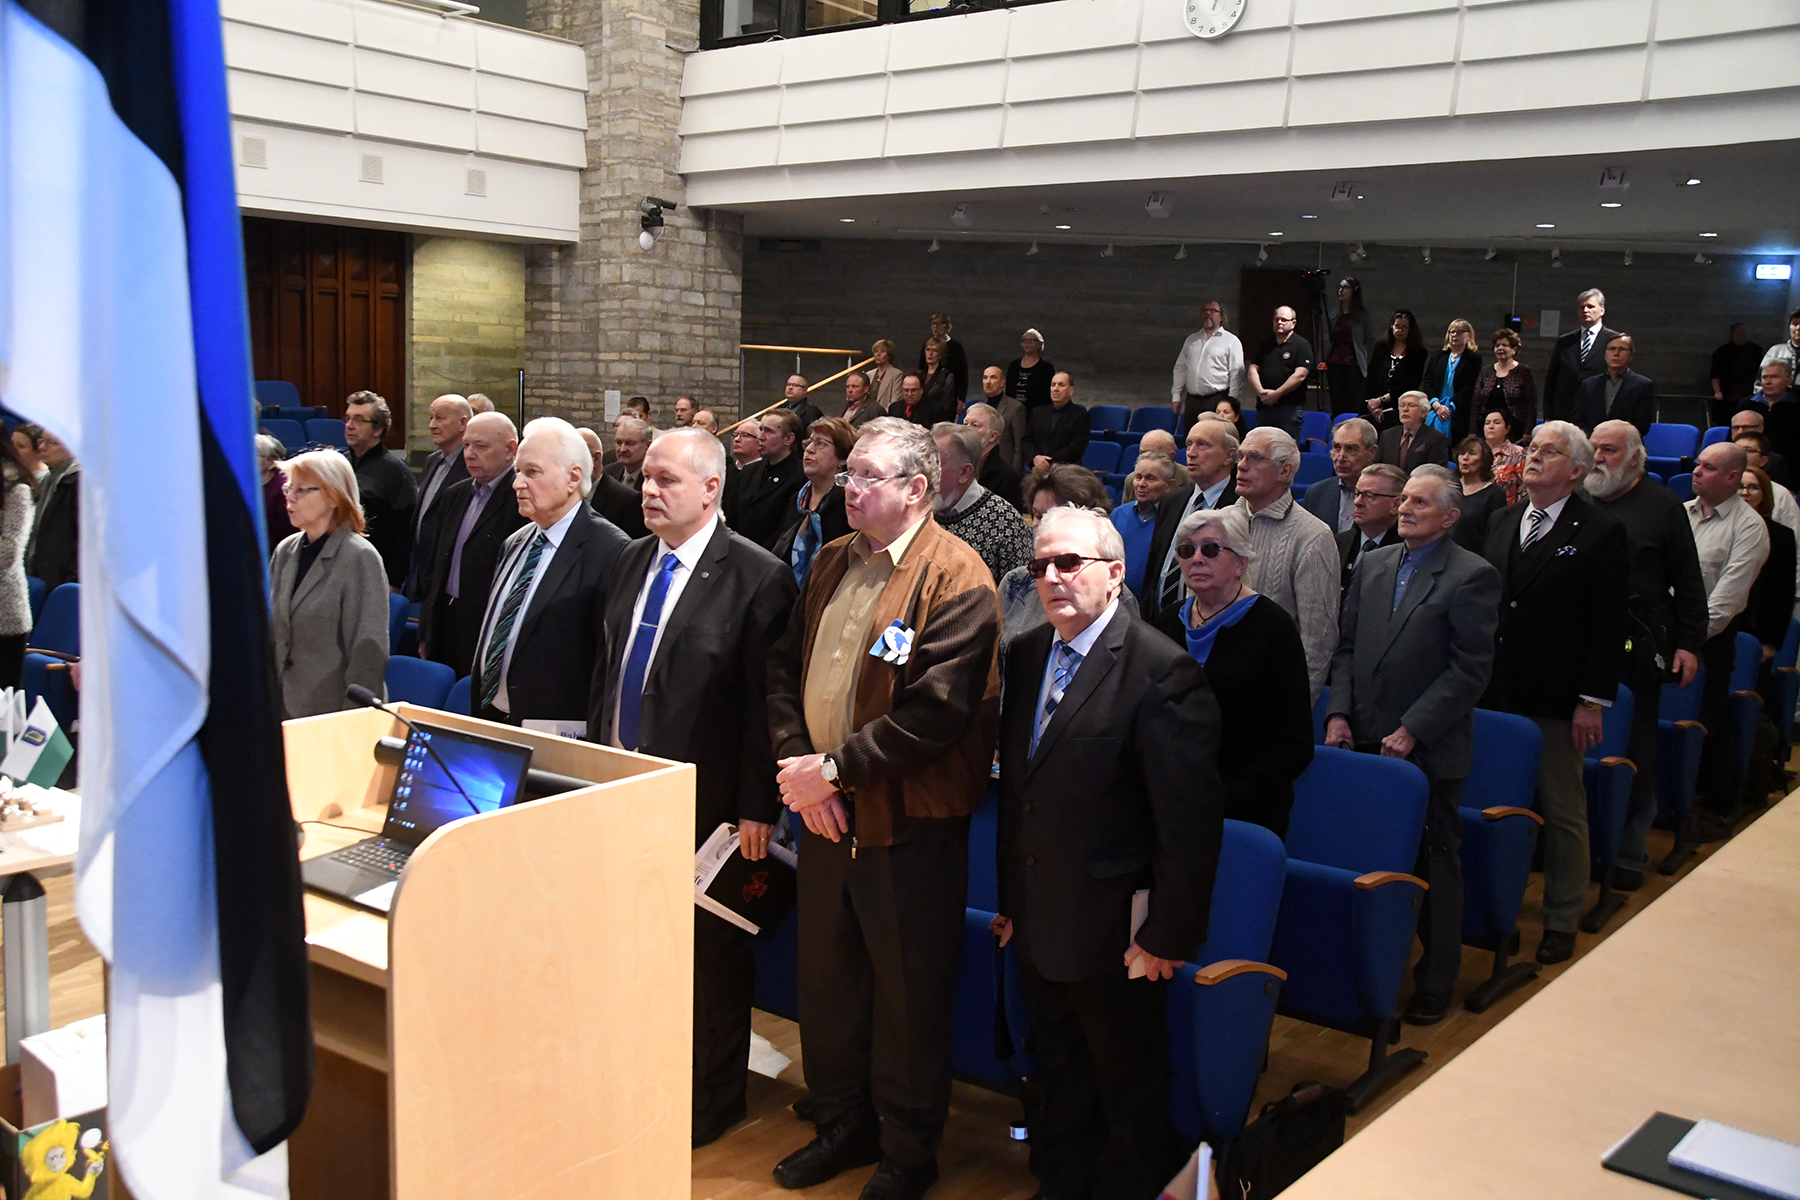 Hümni laulmine Tartu rahuläbirääkimiste 100. aastapäevale pühendatud konverentsil rahvusraamatukogus. Foto Urmas Saard